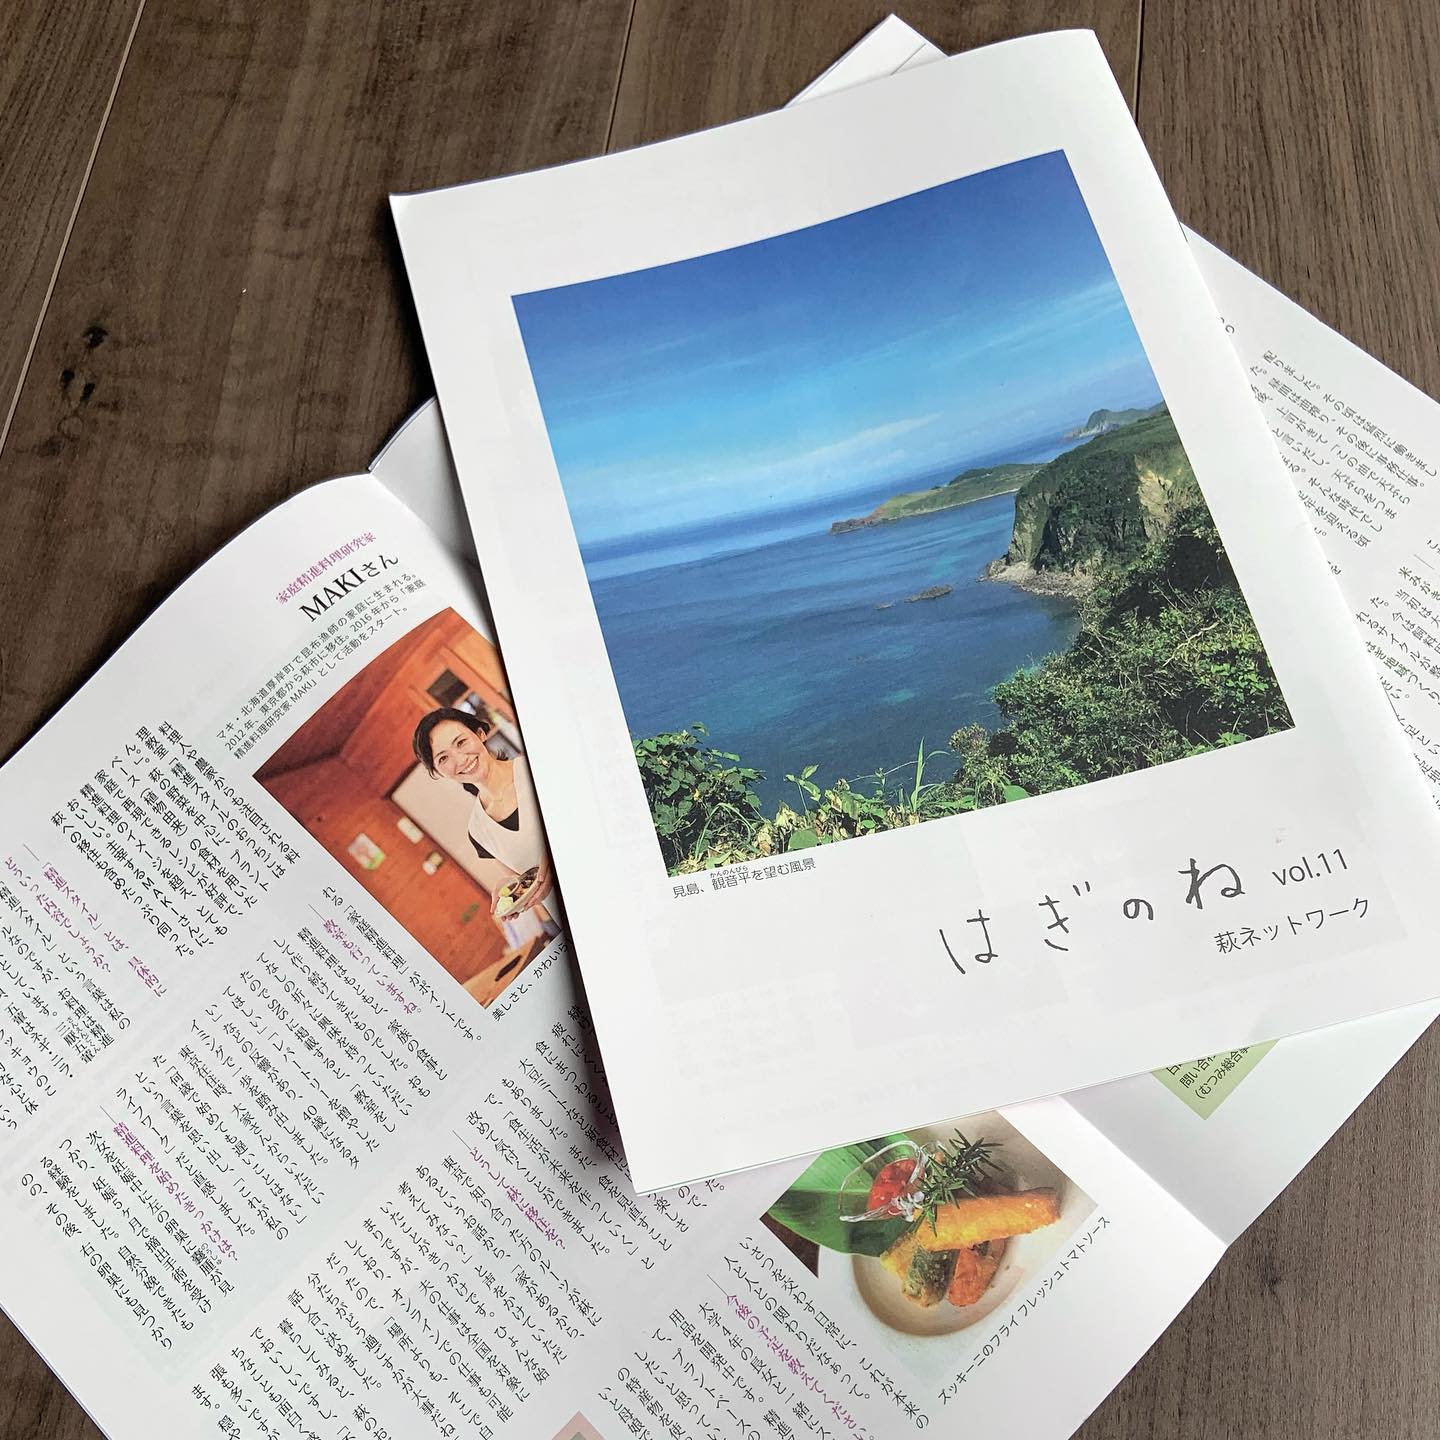 #取材 
#インタビュー  【 はぎのねvol.11 】  萩ネットワーク協会さんが年4回発行される情報誌
『はぎのね』の最新号のインタビュー記事
「その道を進むひと-This is my way」で
家庭精進料理研究家 MAKI をご紹介いただいています。  東京から萩へ移住した経緯や
教室を始めるきっかけ、
今後の展望についてもちょっぴり
お話しさせていただいた内容を
1ページ丸ごと
分かりやすくまとめていただきました。  ご縁に感謝♡  ありがとうございます😊  #はぎのね 
#つぎはぎ編集部 
#萩ネットワーク協会 
#ローカル 
#情報誌 
#山口県萩市 
#精進スタイル 
#家庭精進料理研究家maki  #plantbased #homecooking #vegan 
#shojinryori #lifestyle #healthy #japan 
#精進料理 #料理教室 #家庭精進料理 
#料理研究家 #おうちごはん #古民家暮らし 
#iターン #移住生活 #sdgs #地域創生 
#田舎暮らし #季節を感じる暮らし
@tsugihagi_mag